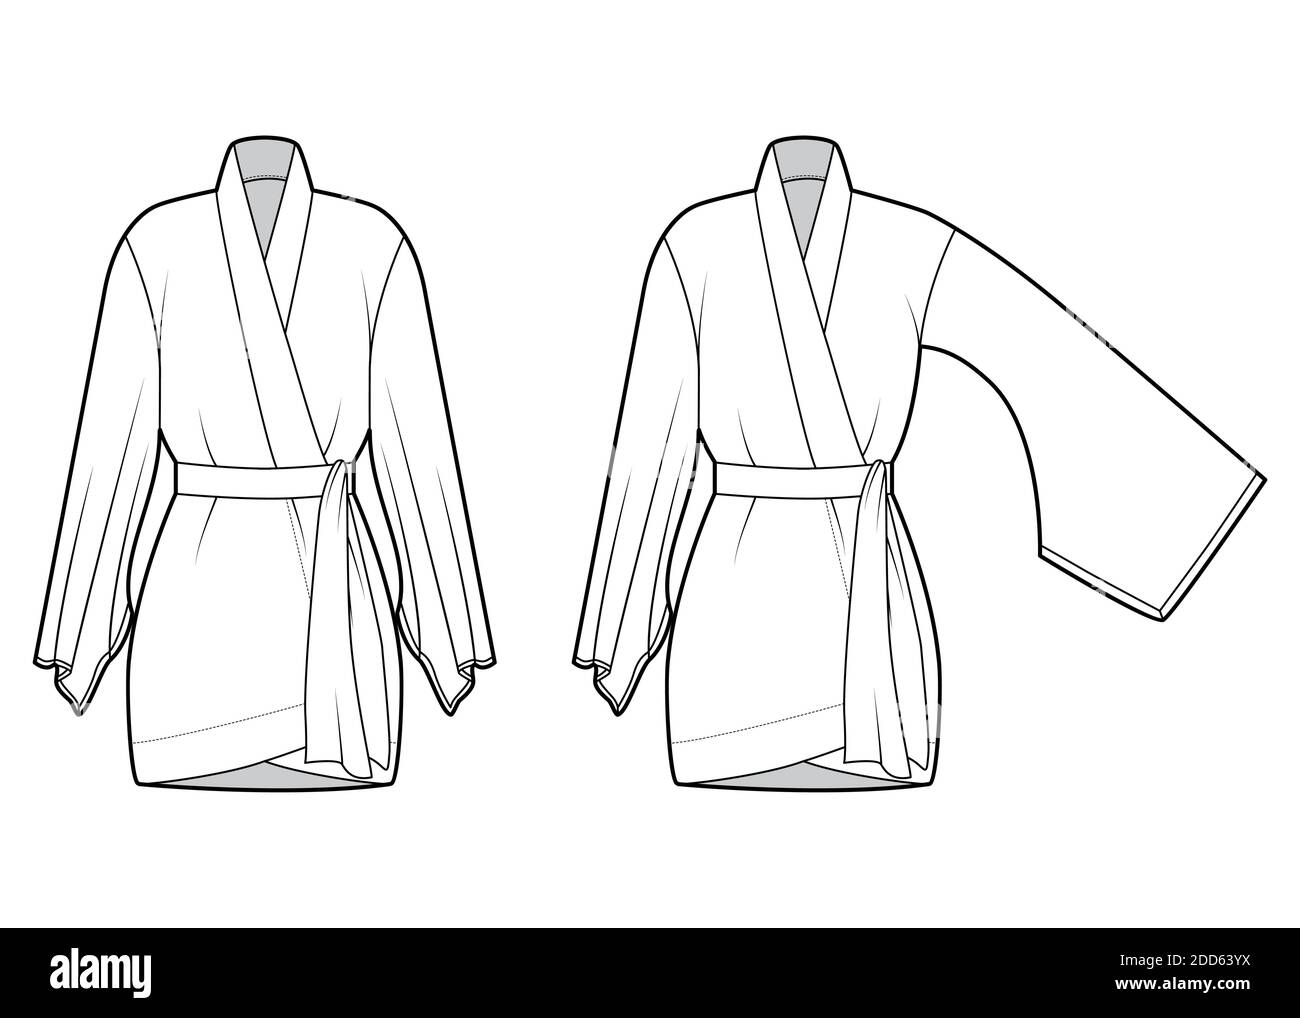 Ensemble de robe kimono, illustration technique de la mode avec manches  longues larges, ceinture pour attacher la taille, longueur au-dessus du  genou. Modèle de chemisier plat sur le devant, couleur blanche. Maquette